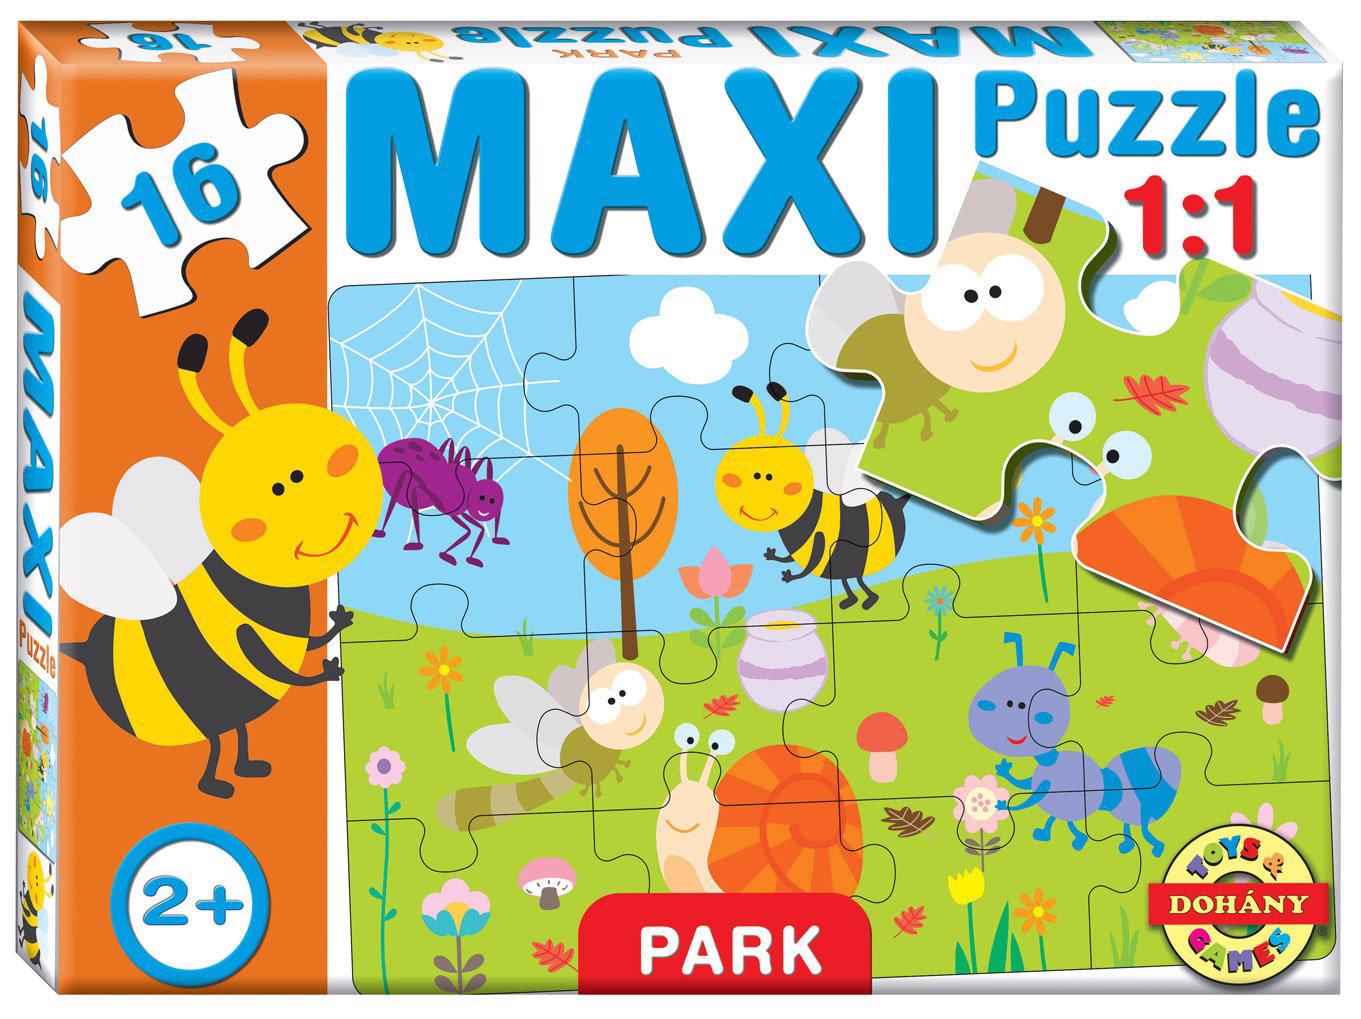 Puzzle Maxi Puzzel Lúka 16